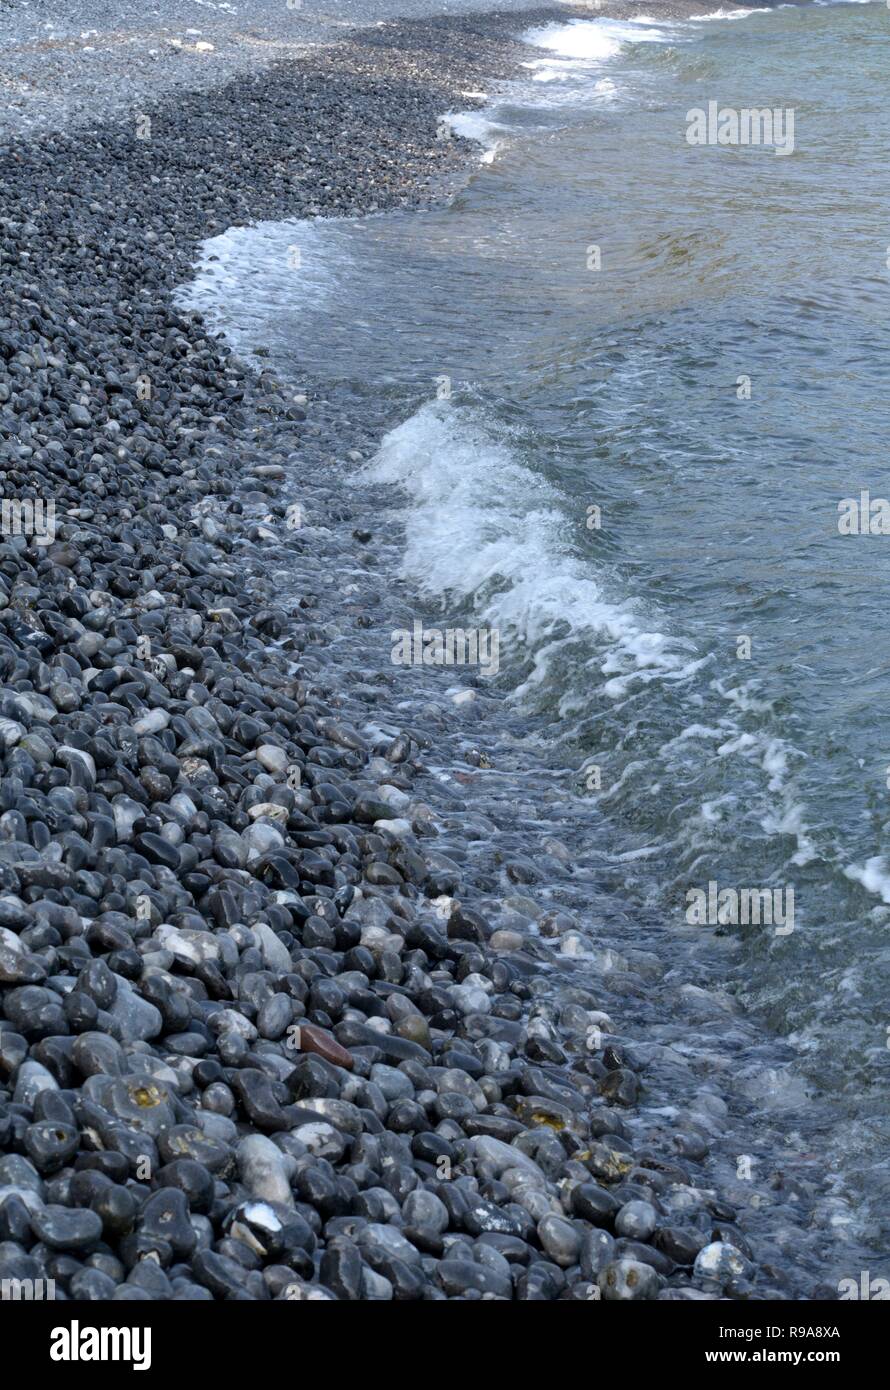 Brillante et lisse noir des pierres sur la plage de la mer Baltique Banque D'Images